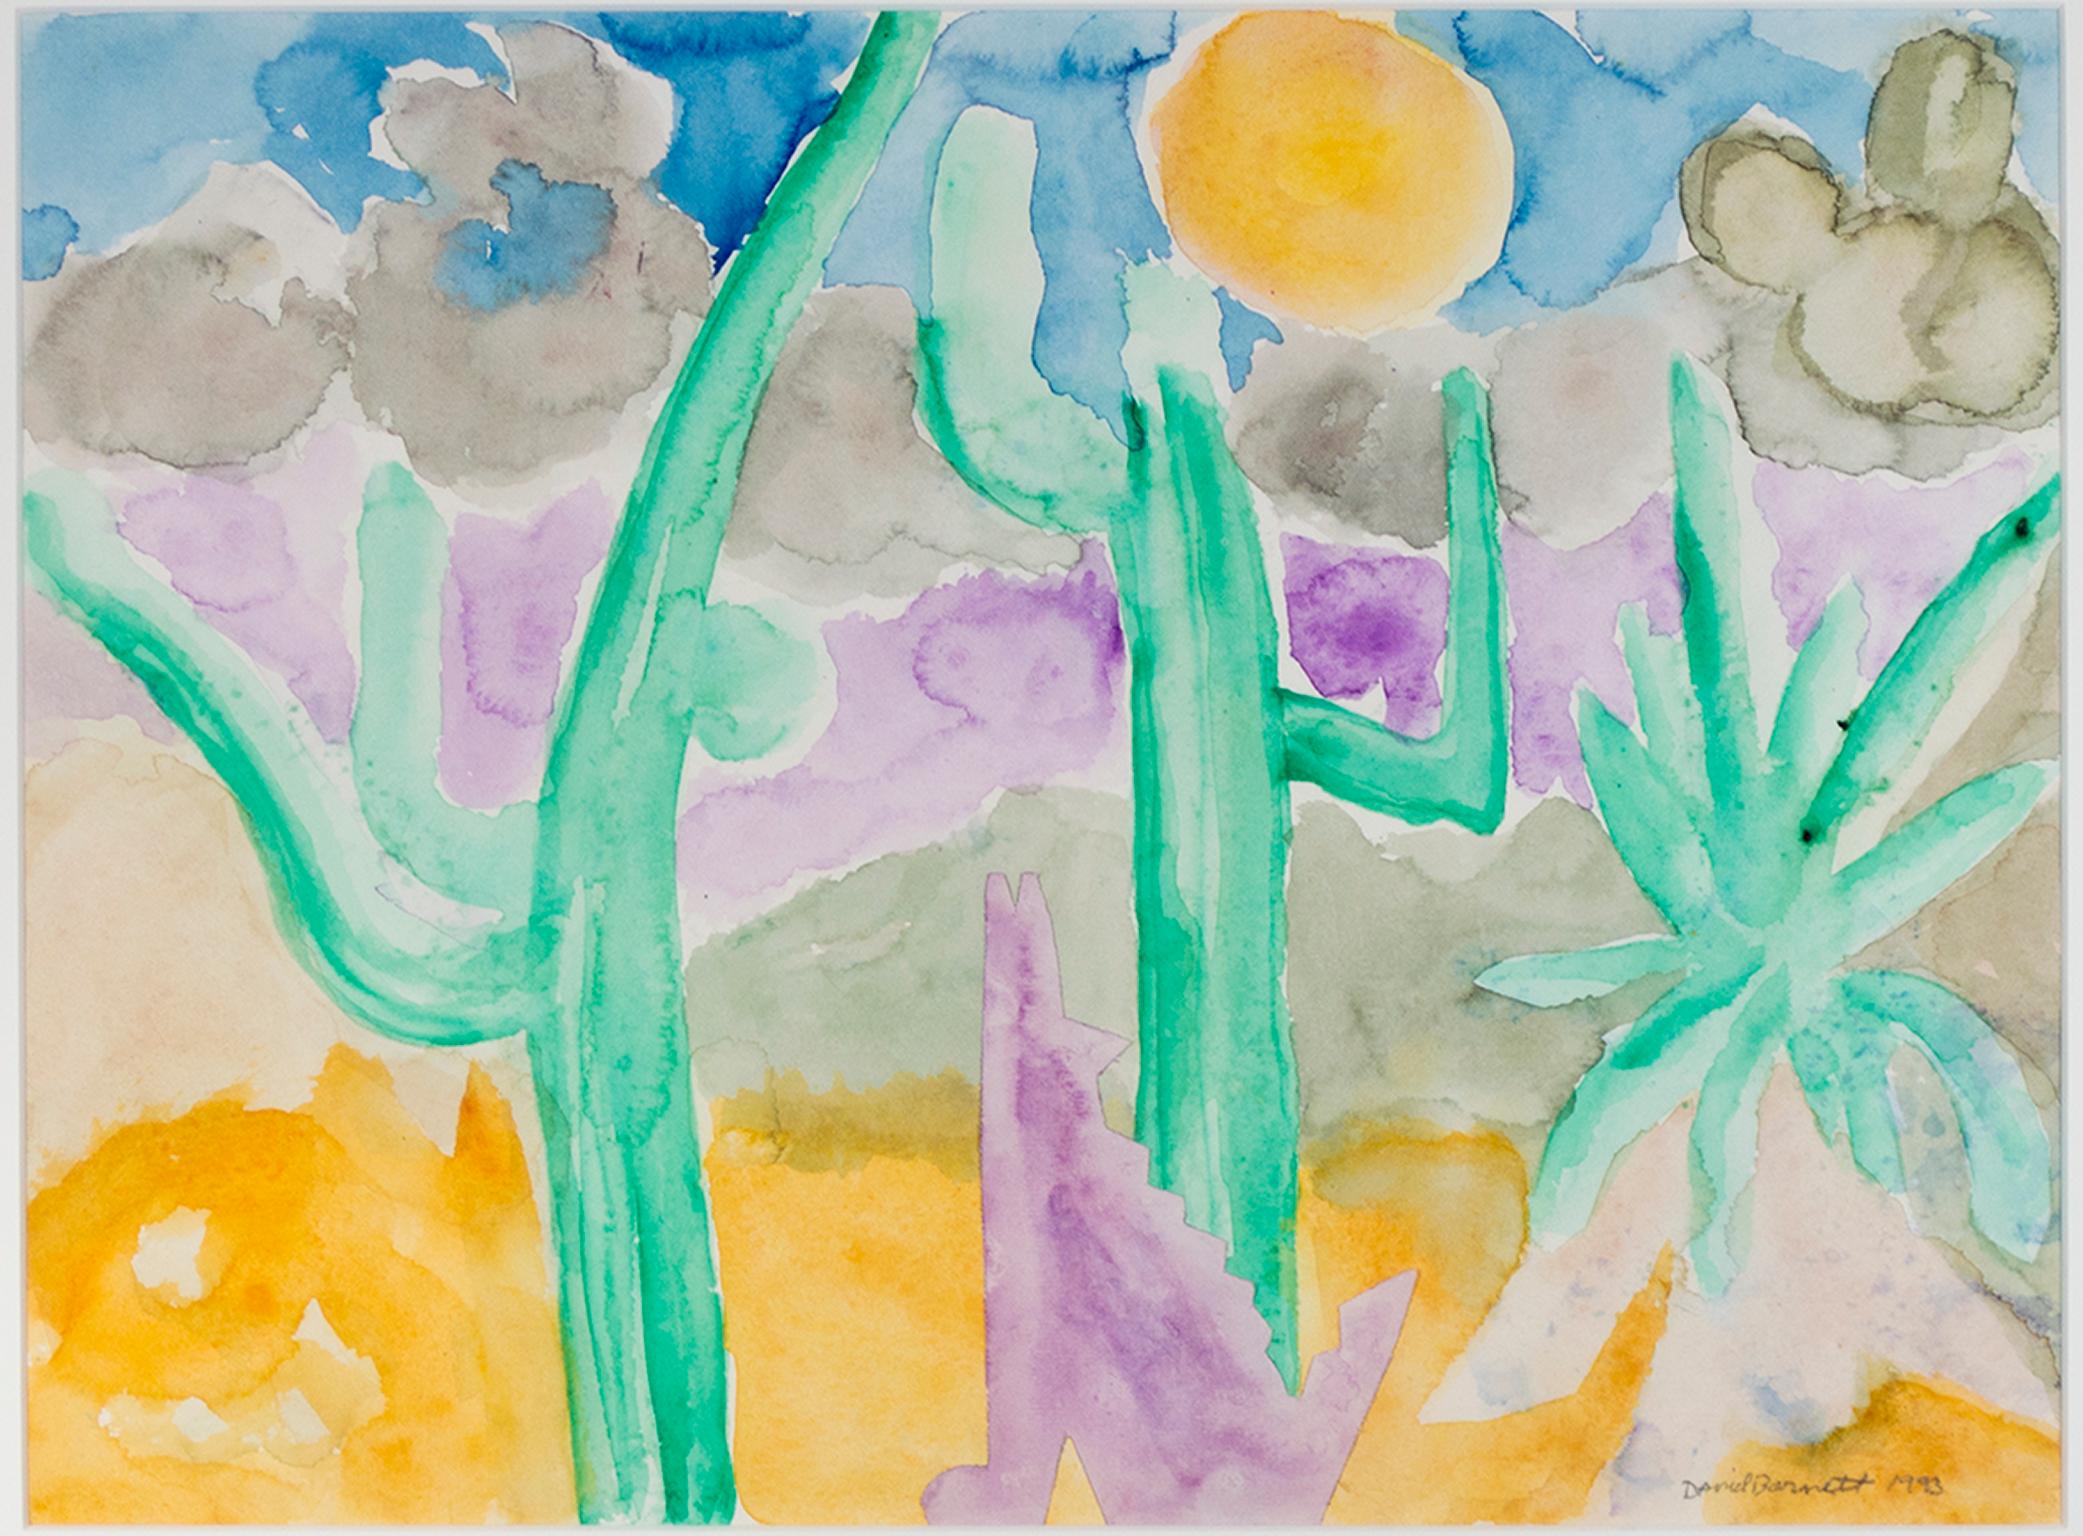 "Dancing Saguaro & Coyote" ist ein Originalaquarell von David Barnett, signiert in der unteren rechten Ecke. Die abstrahierte Wüstenlandschaft ist in Schichten von reinem, leuchtendem Gelb, Grün, Lila, Blau und Schwarz gehalten. Die vereinfachten